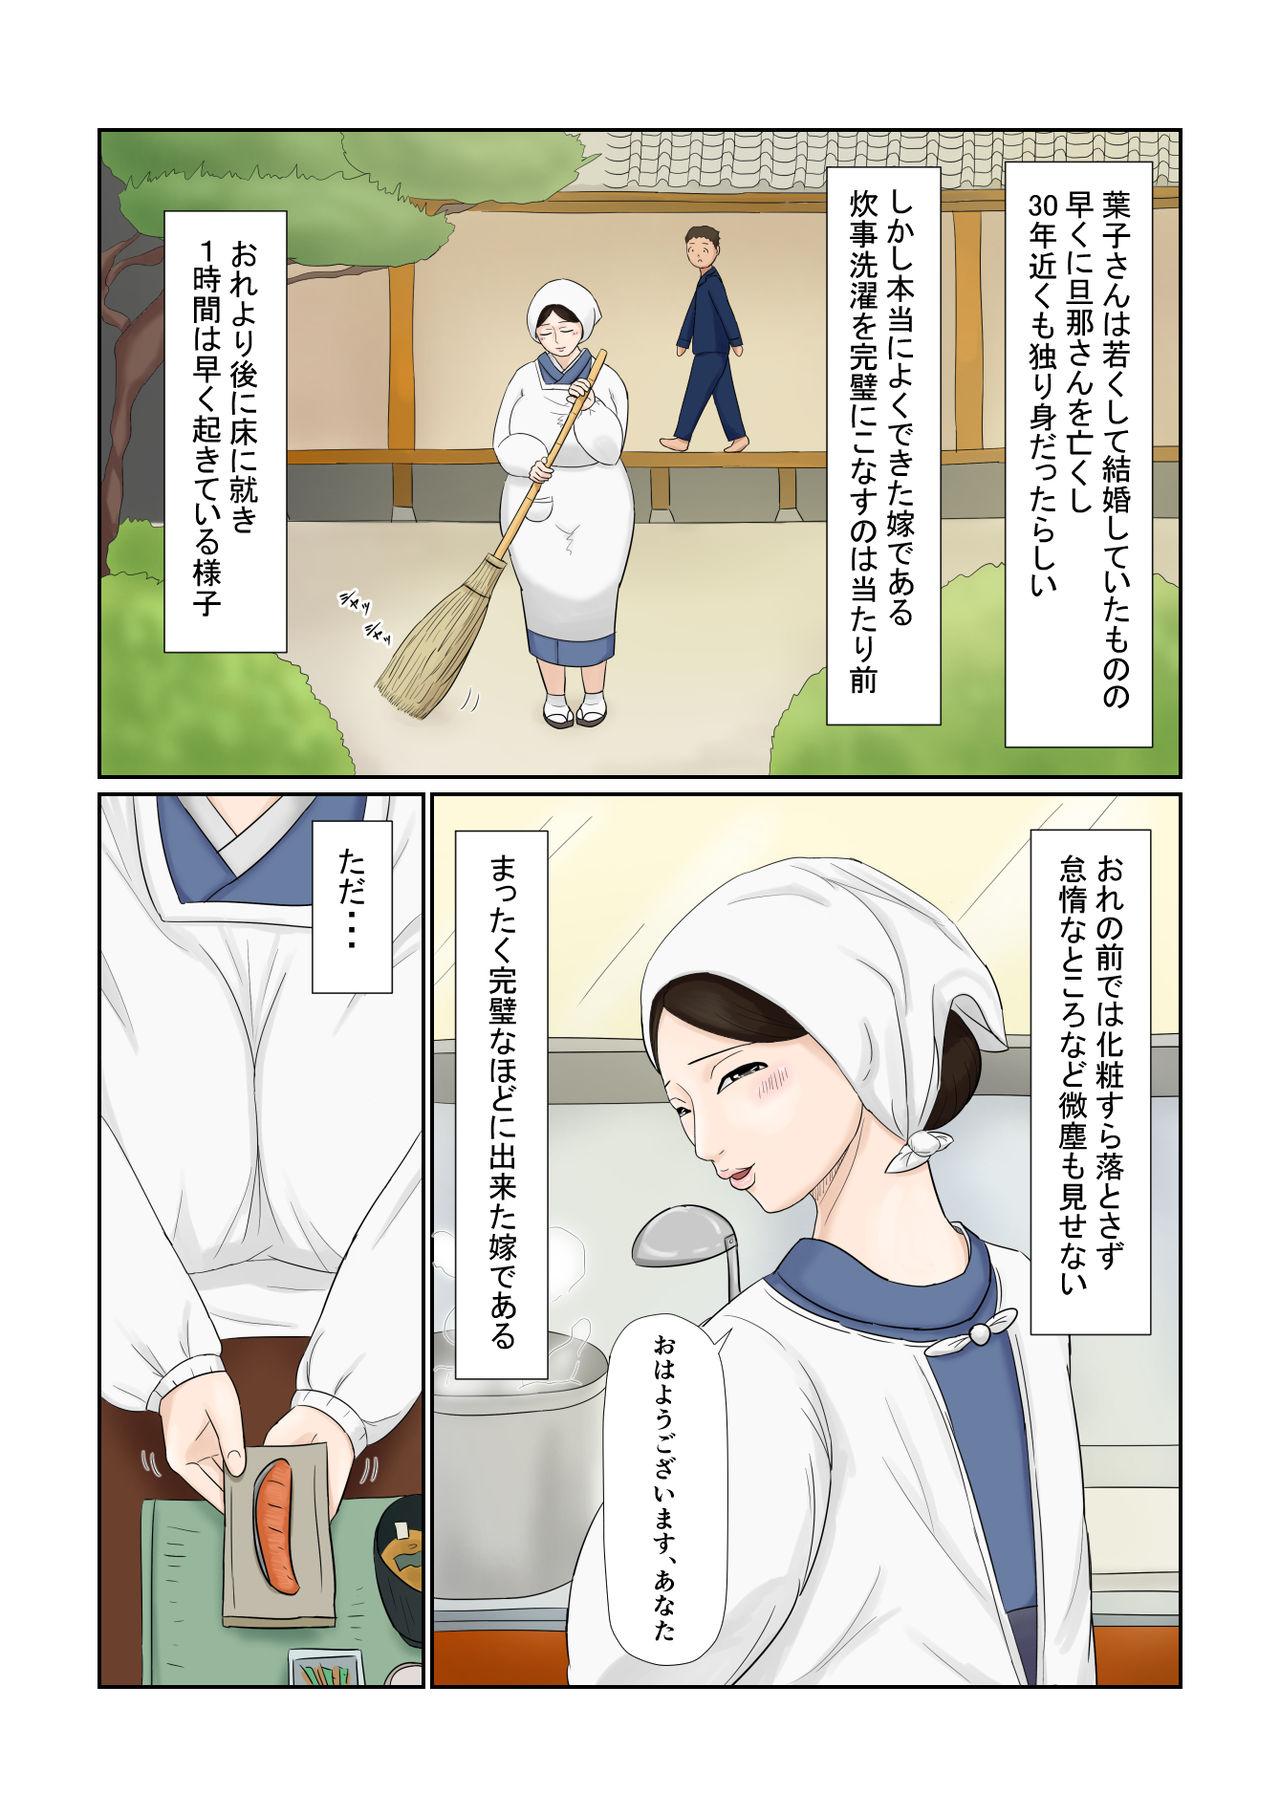 Holes Yome wa Isoji Yamato Nadeshiko Muttsuri Dosukebe - Original Short - Page 4